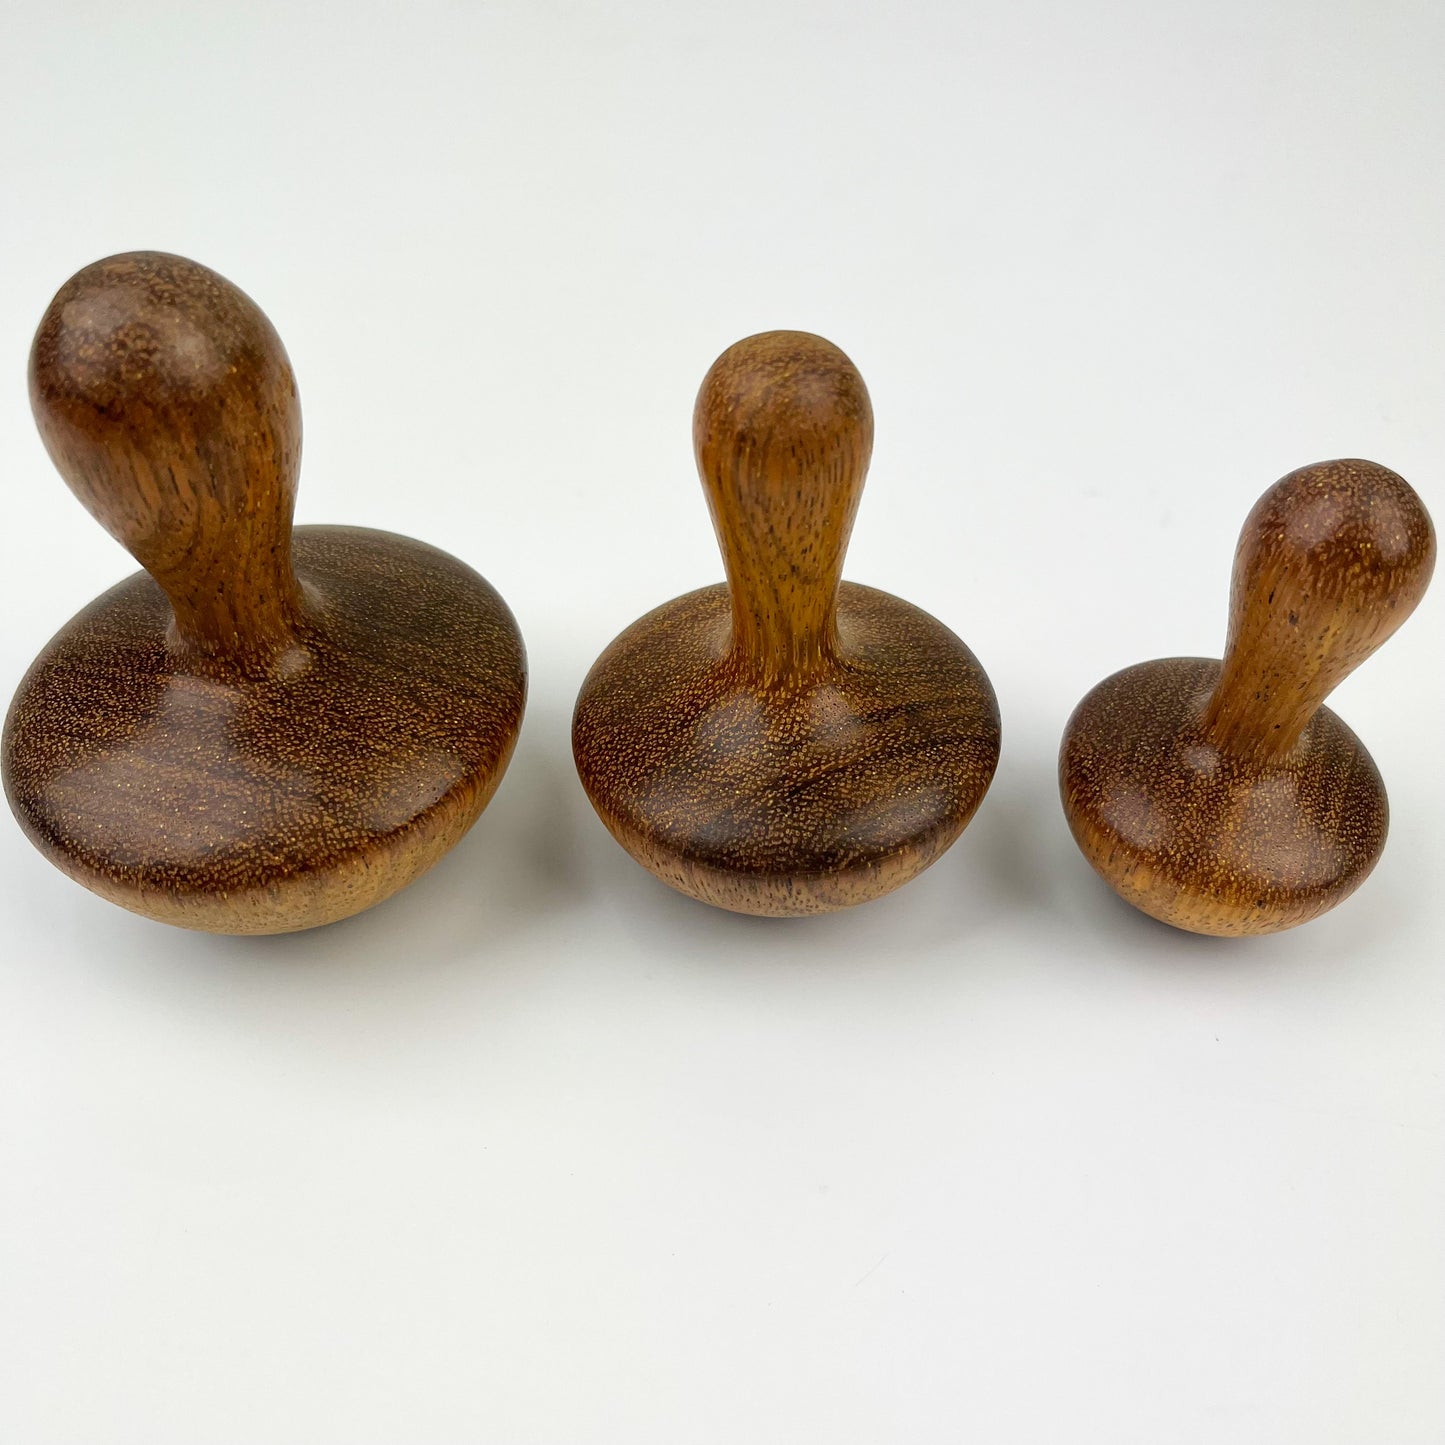 Handmade Wooden Mushroom Darner